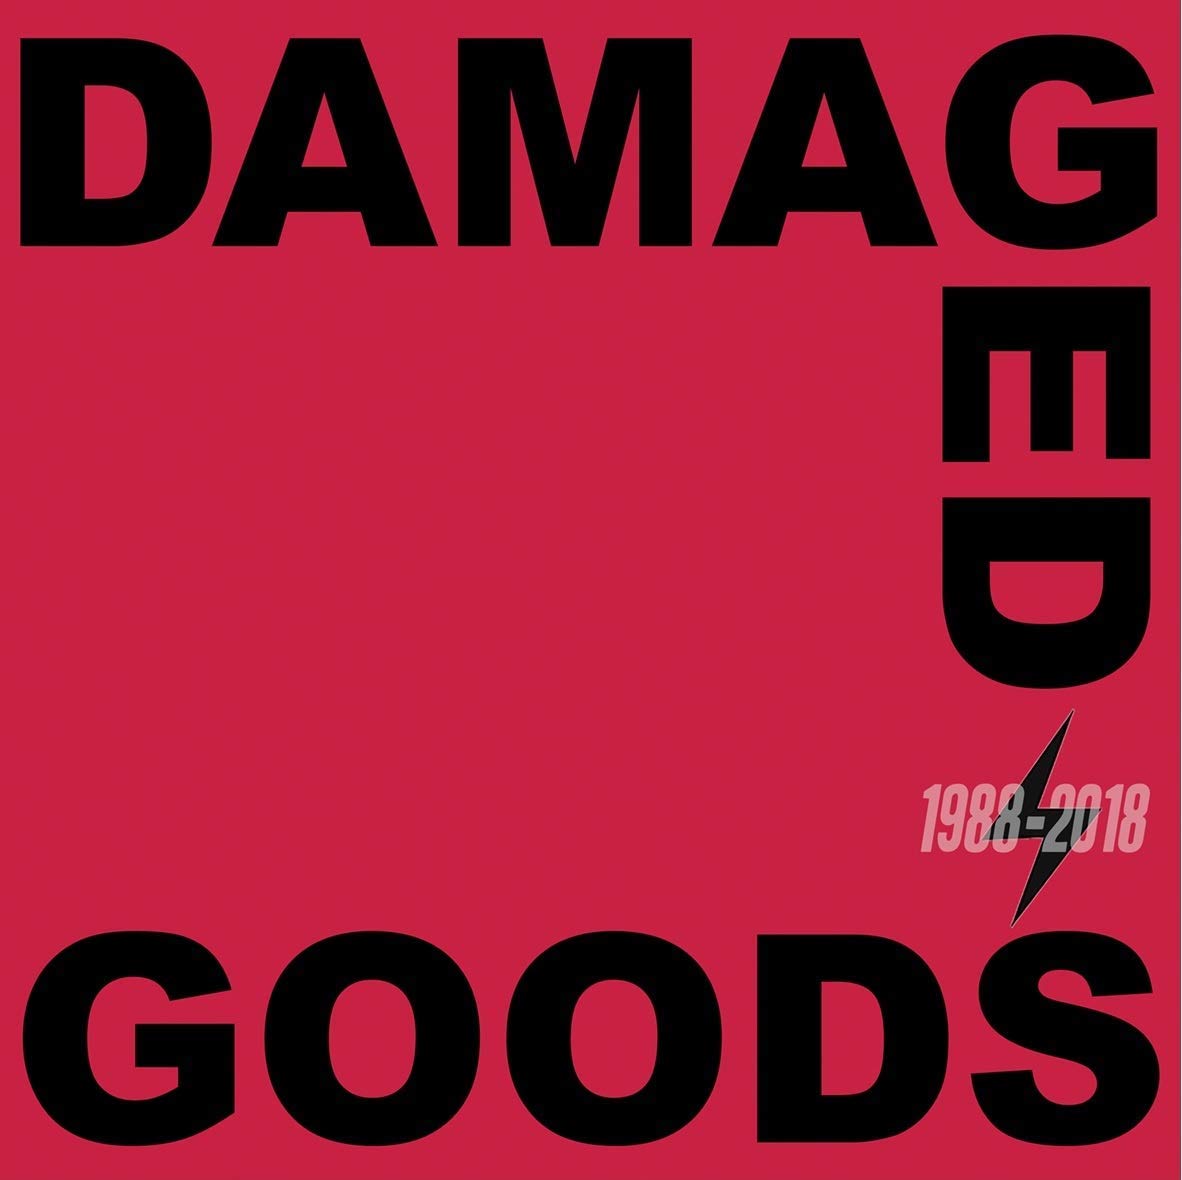 Damaged Goods 1988-2018 / Various | DAMAGED GOODS 1988-2018 / VARIOUS | Vinyl